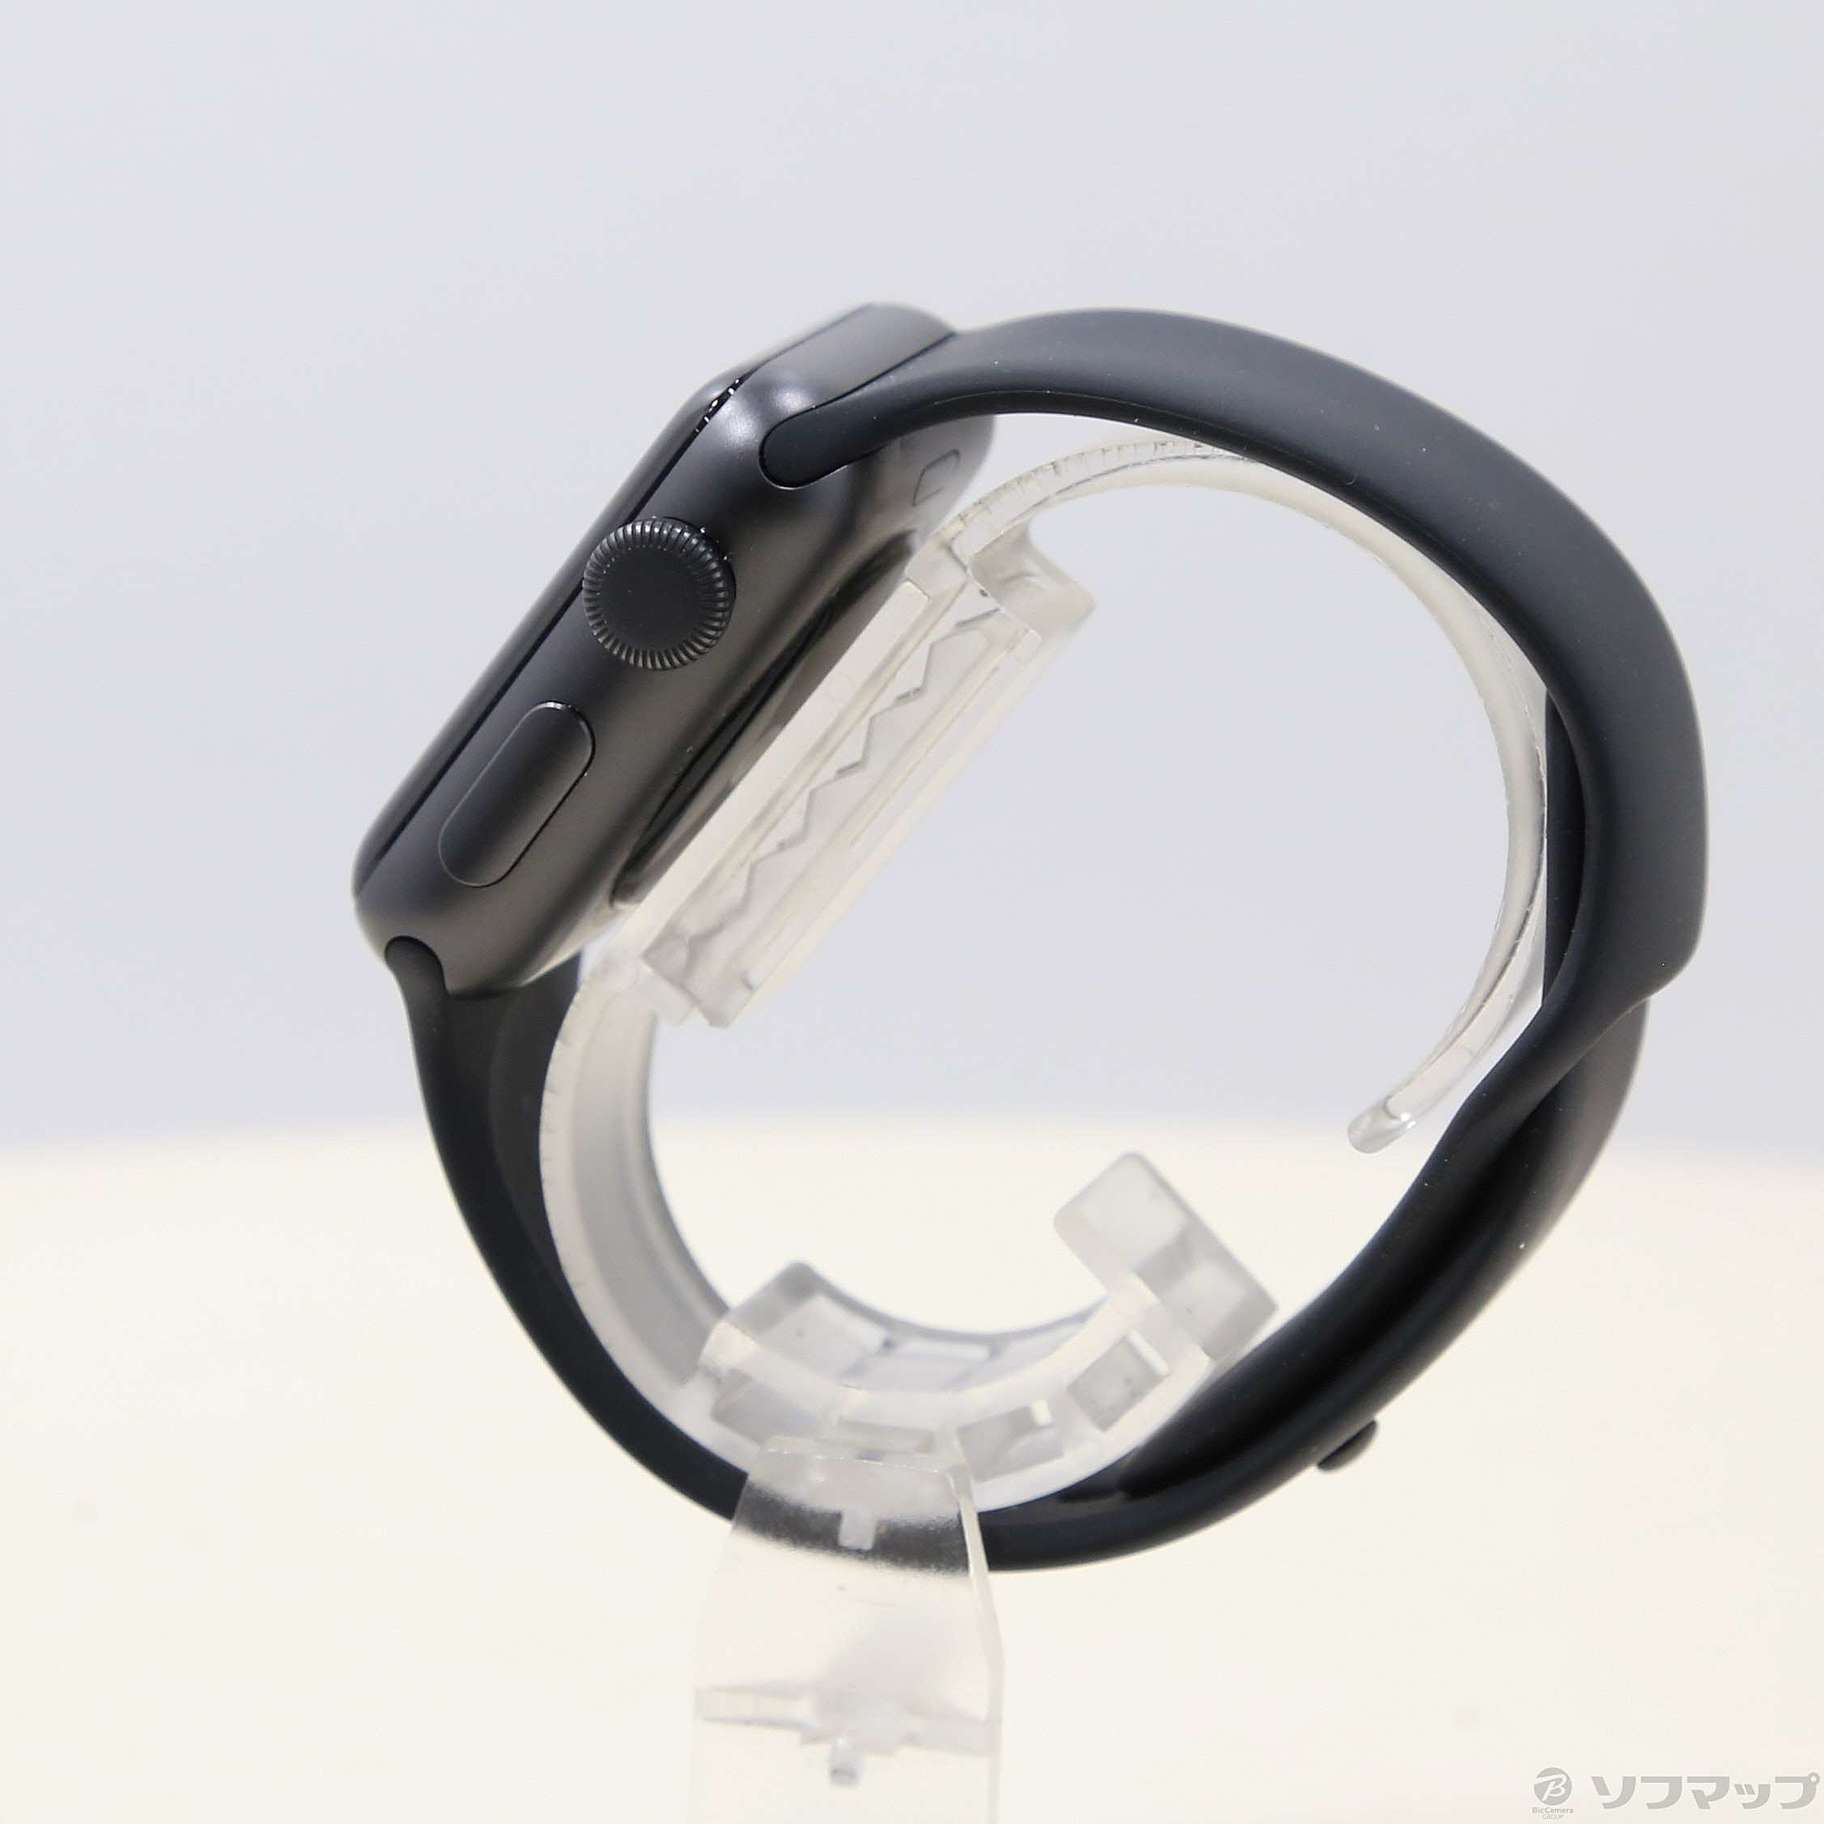 中古】Apple Watch Series 3 GPS 38mm スペースグレイアルミニウム